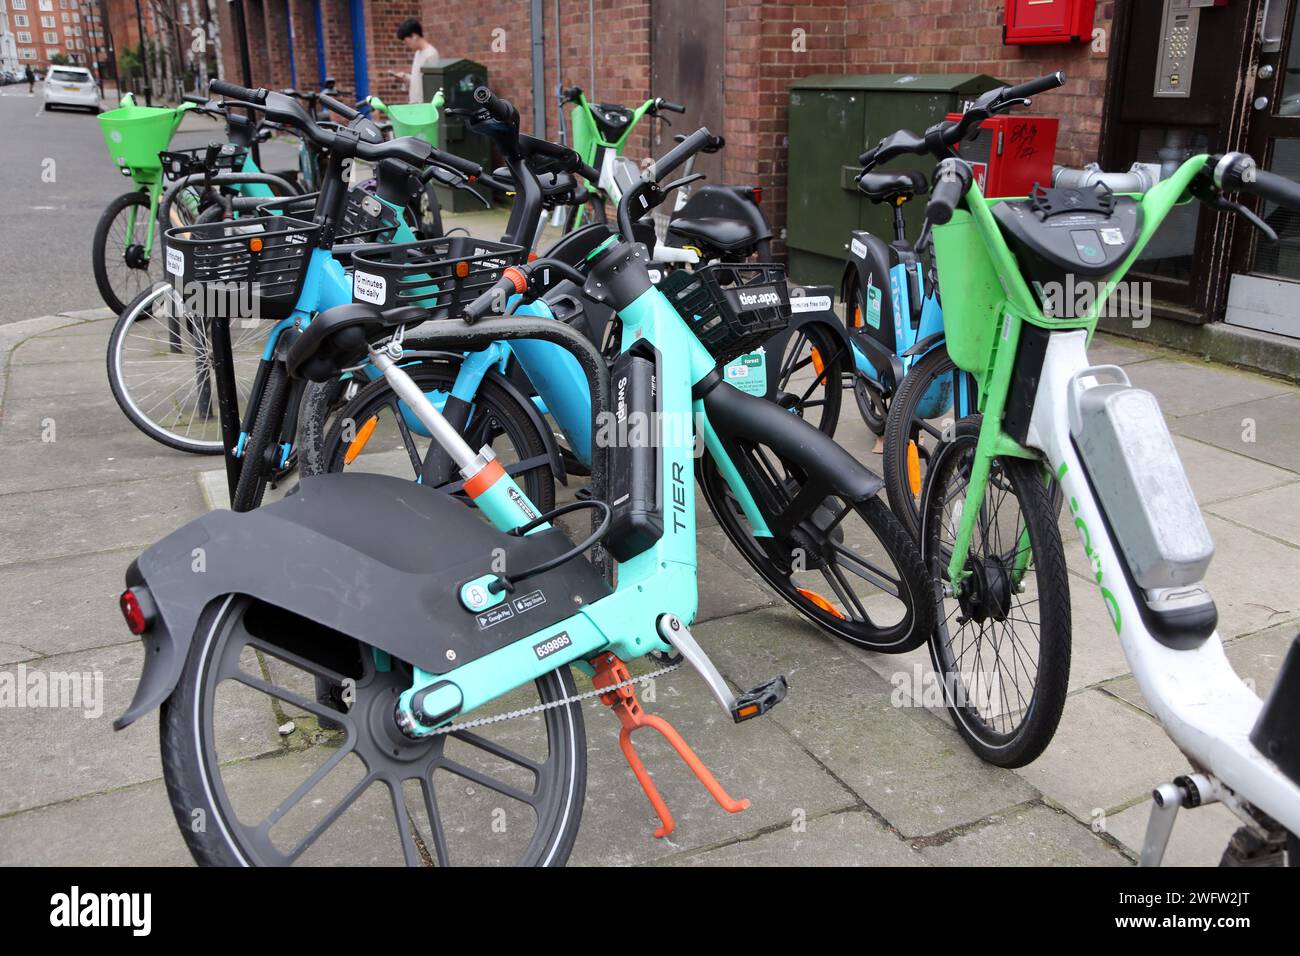 Tier, Lime et River e-Bike Dockless système de location de vélos sur le trottoir Chelsea Londres Angleterre Banque D'Images